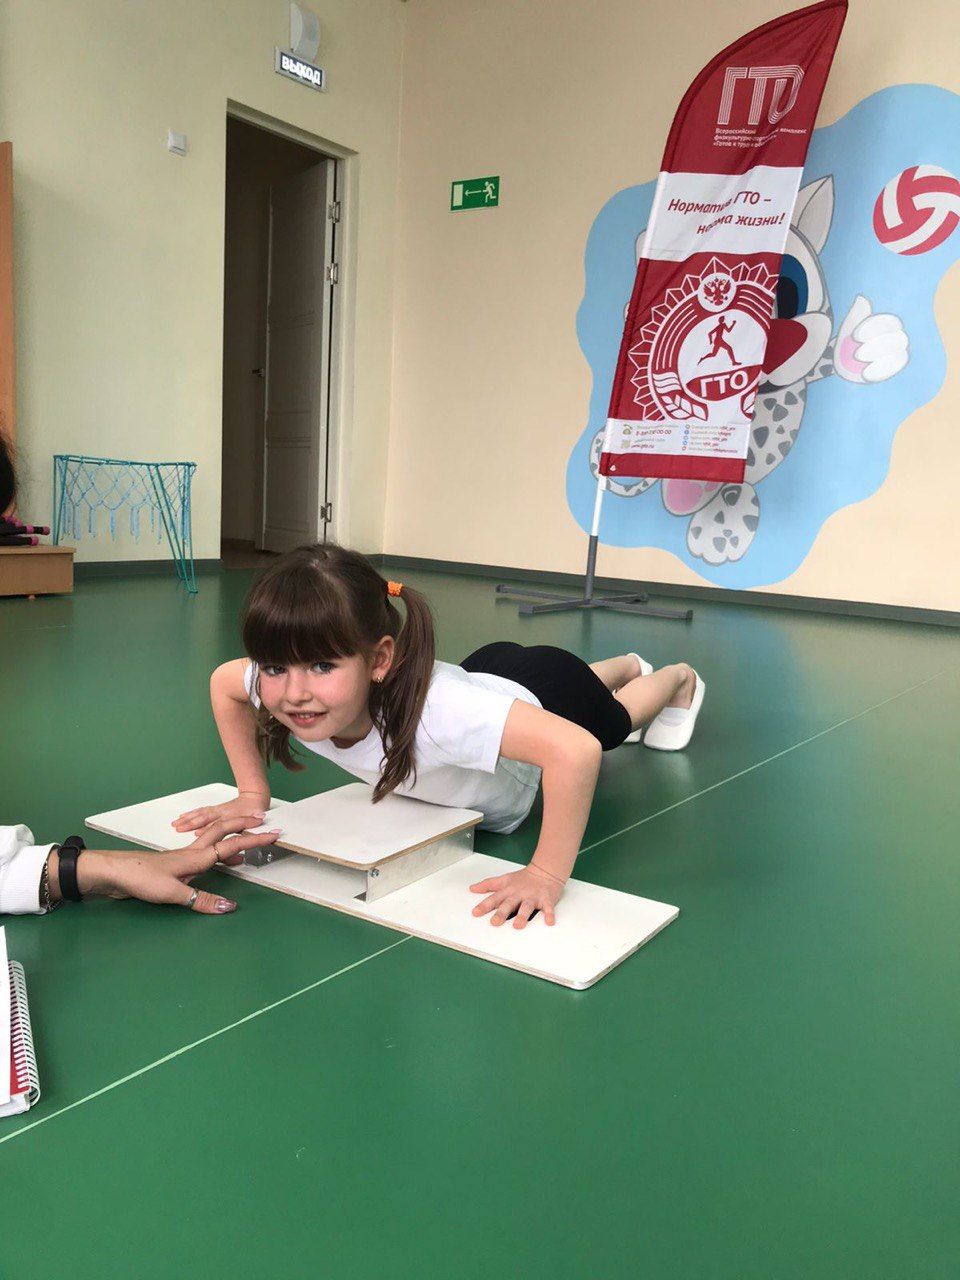 К Всероссийскому движению ГТО присоединились воспитанники детских садов Нурлата